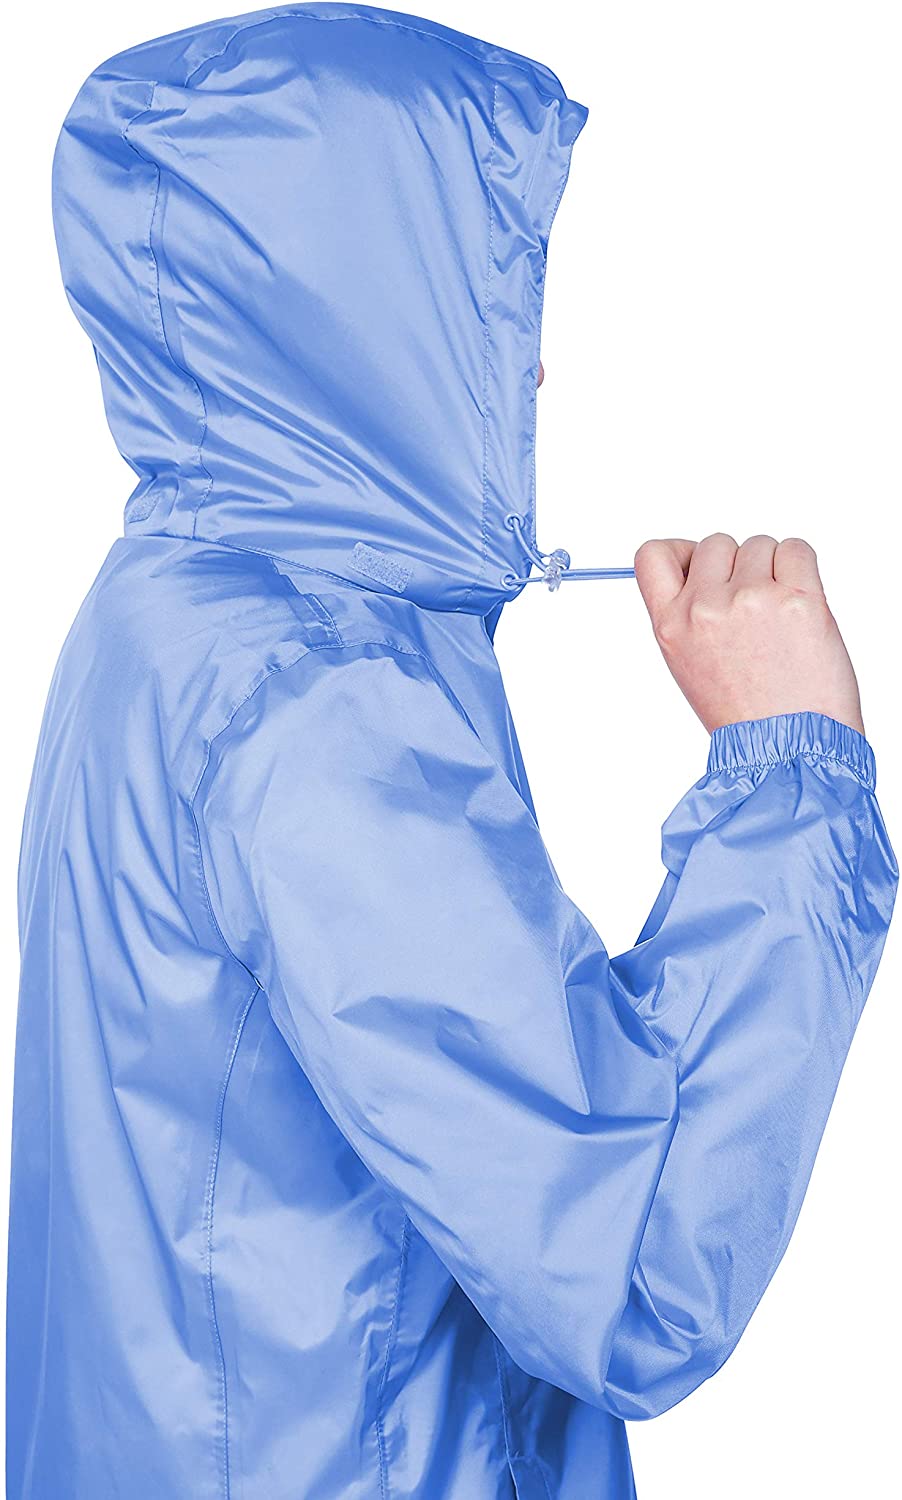 hideaway hood Waterproof Rain Jacket